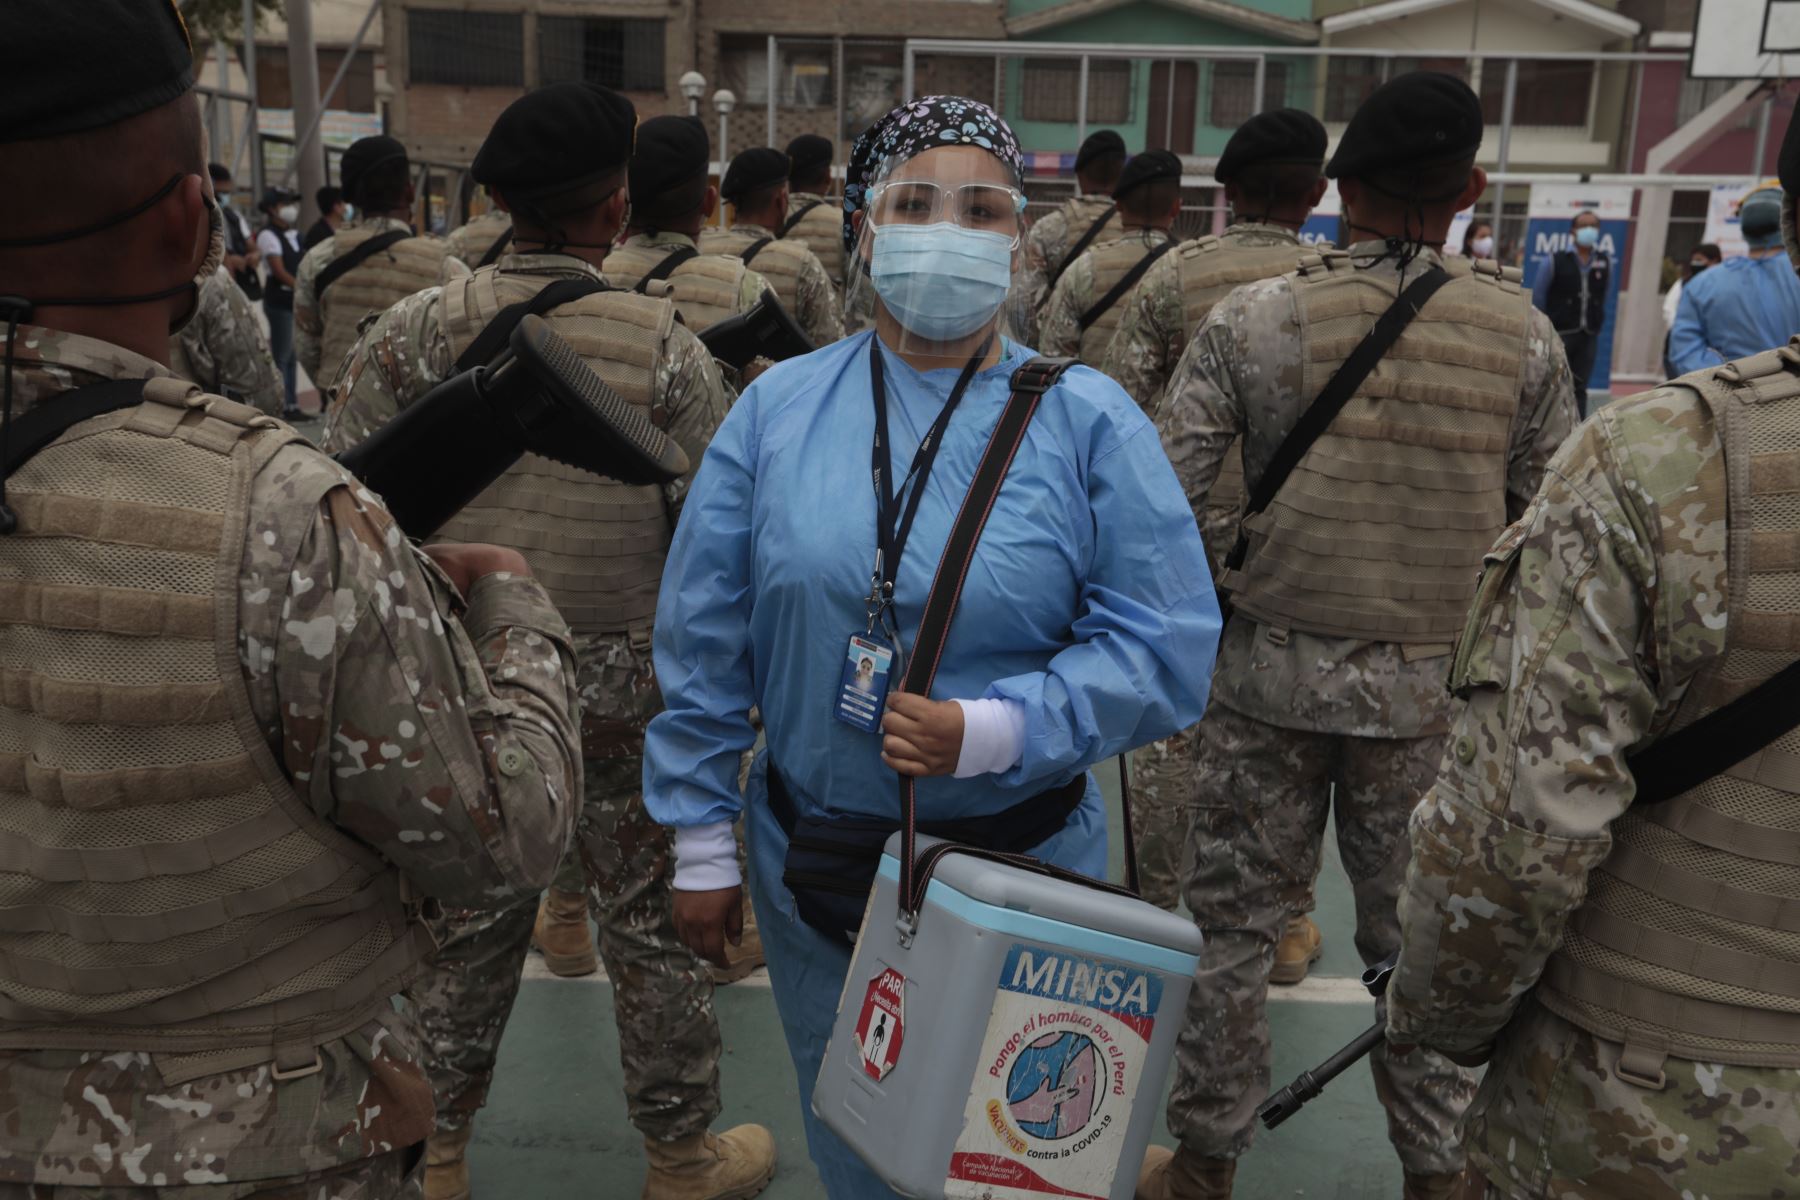 A la Urb. Grumete Medina de Ate llegan las brigadas de salud para intervenir casa por casa con vacunación contra la covid-19 y pruebas moleculares. Foto: Minsa